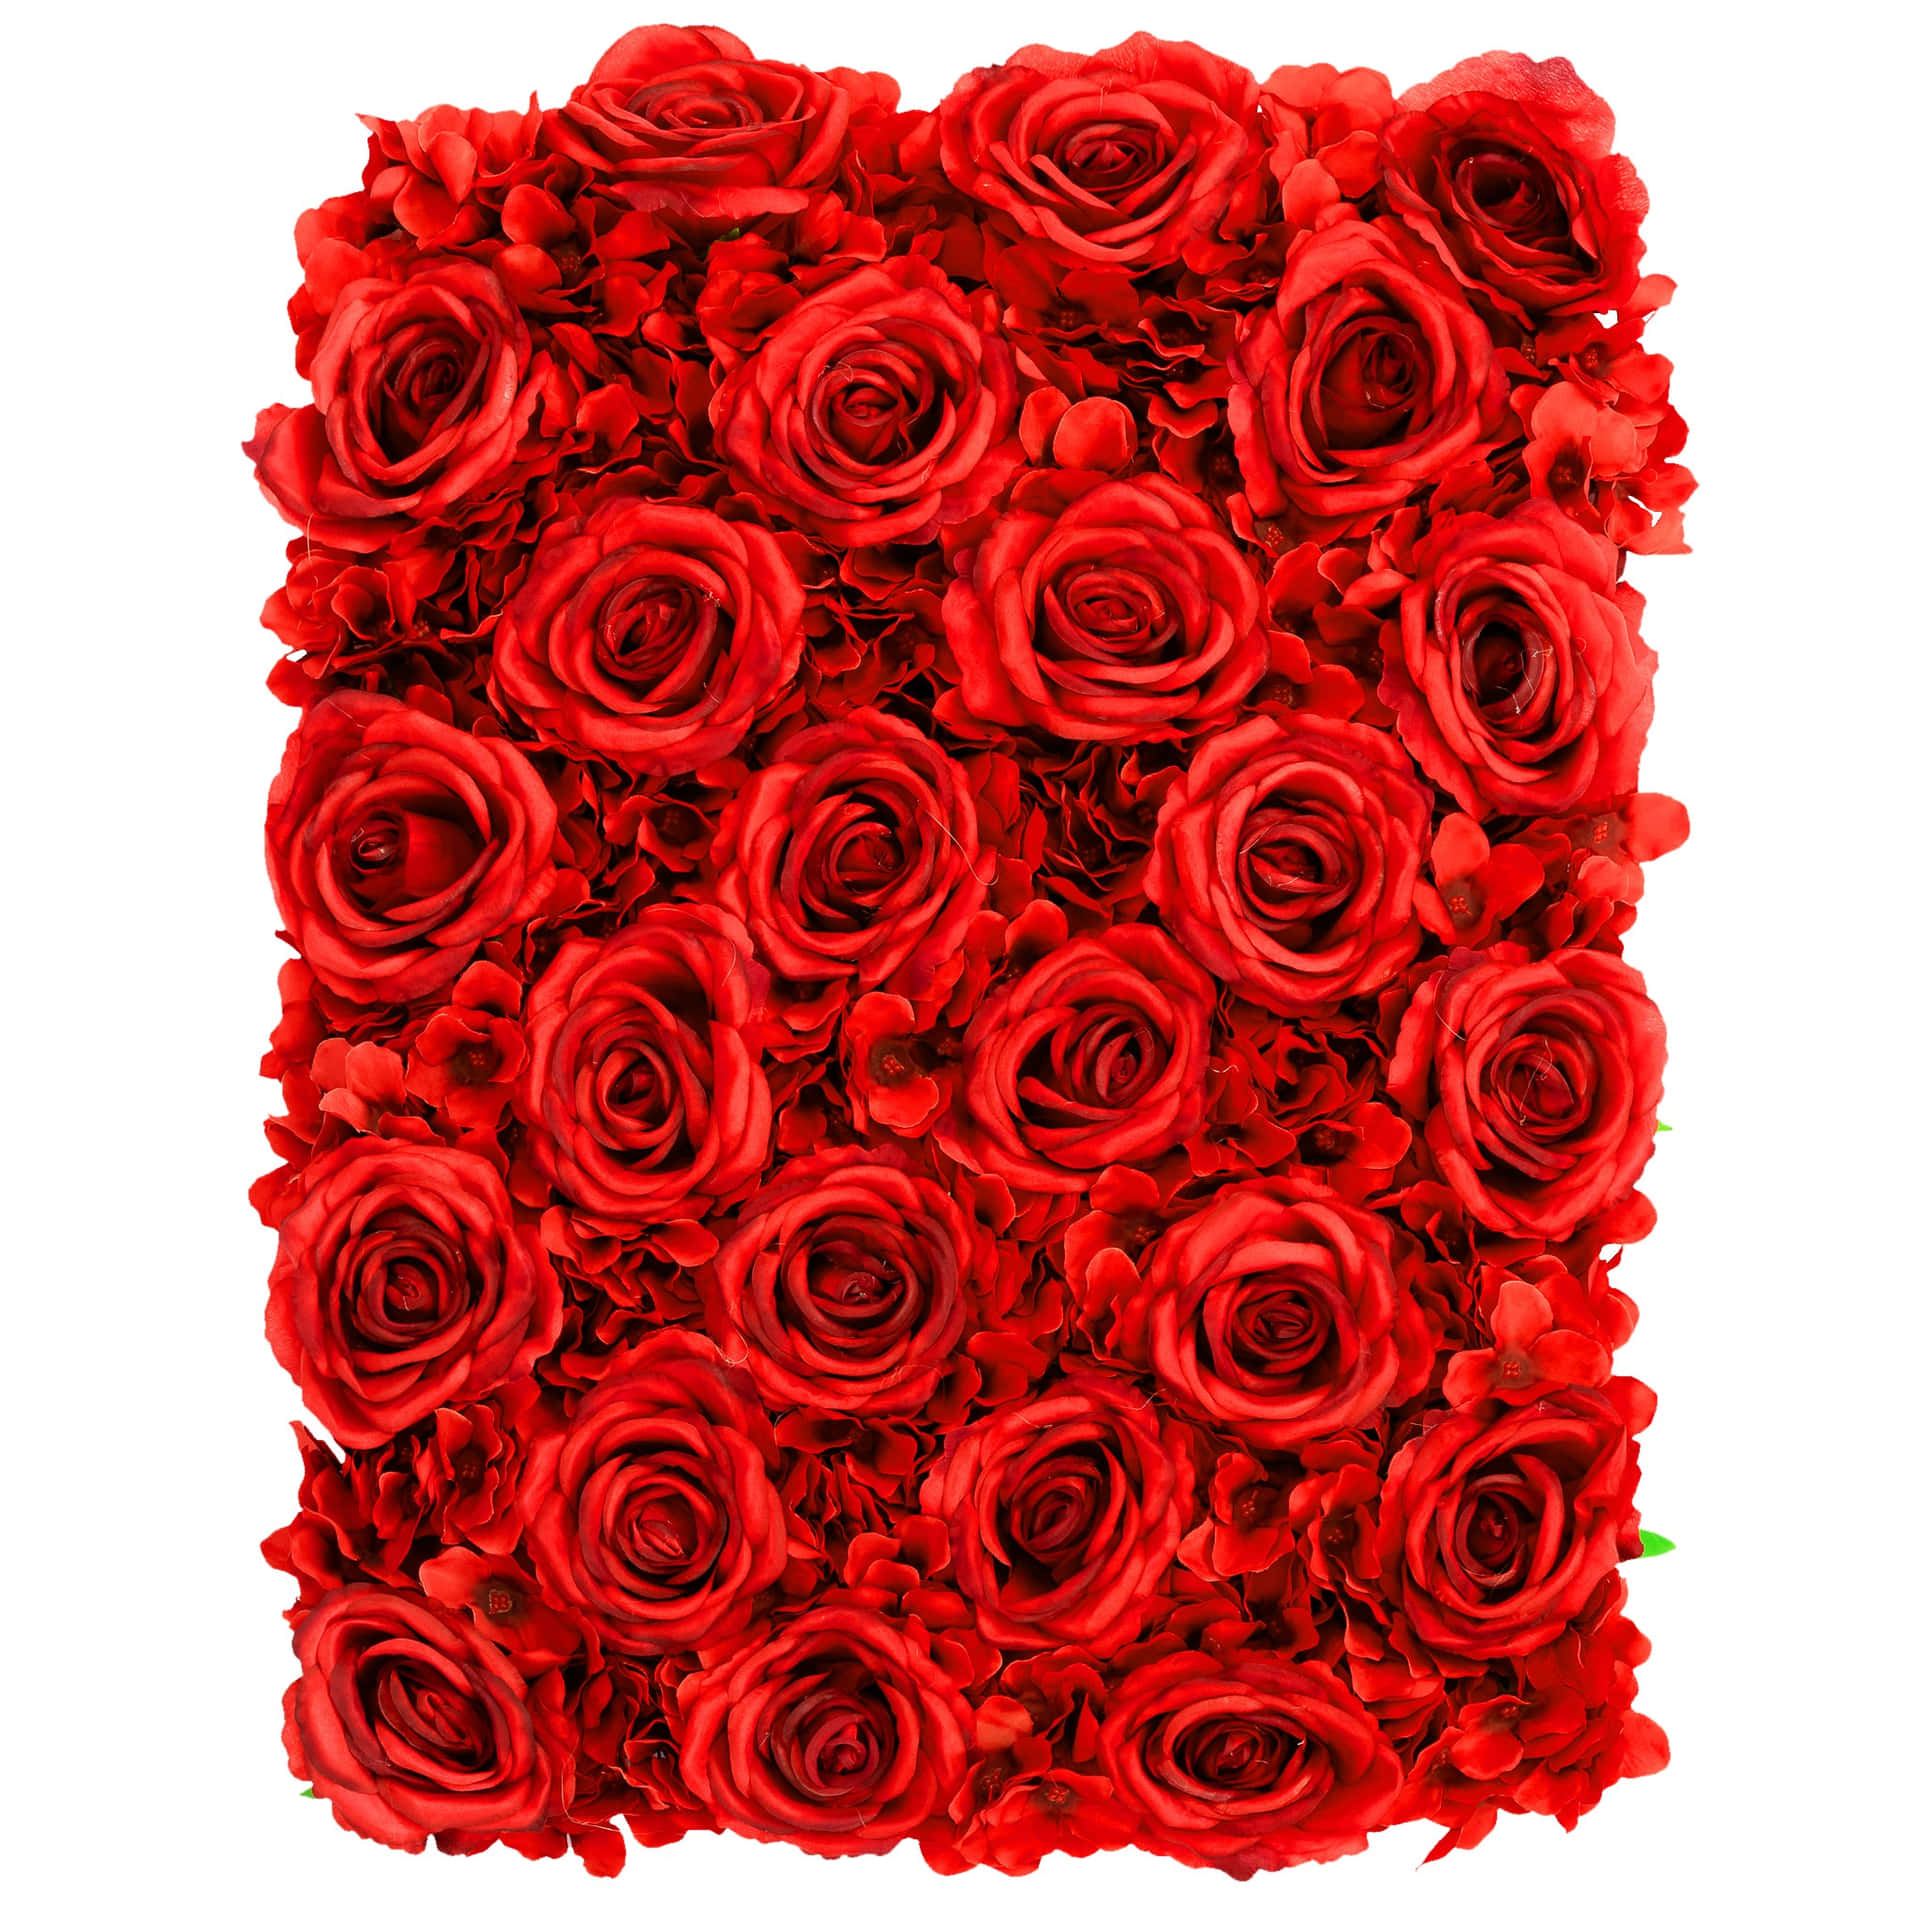 Mangeintense Røde Roser Med Smukke Detaljer.